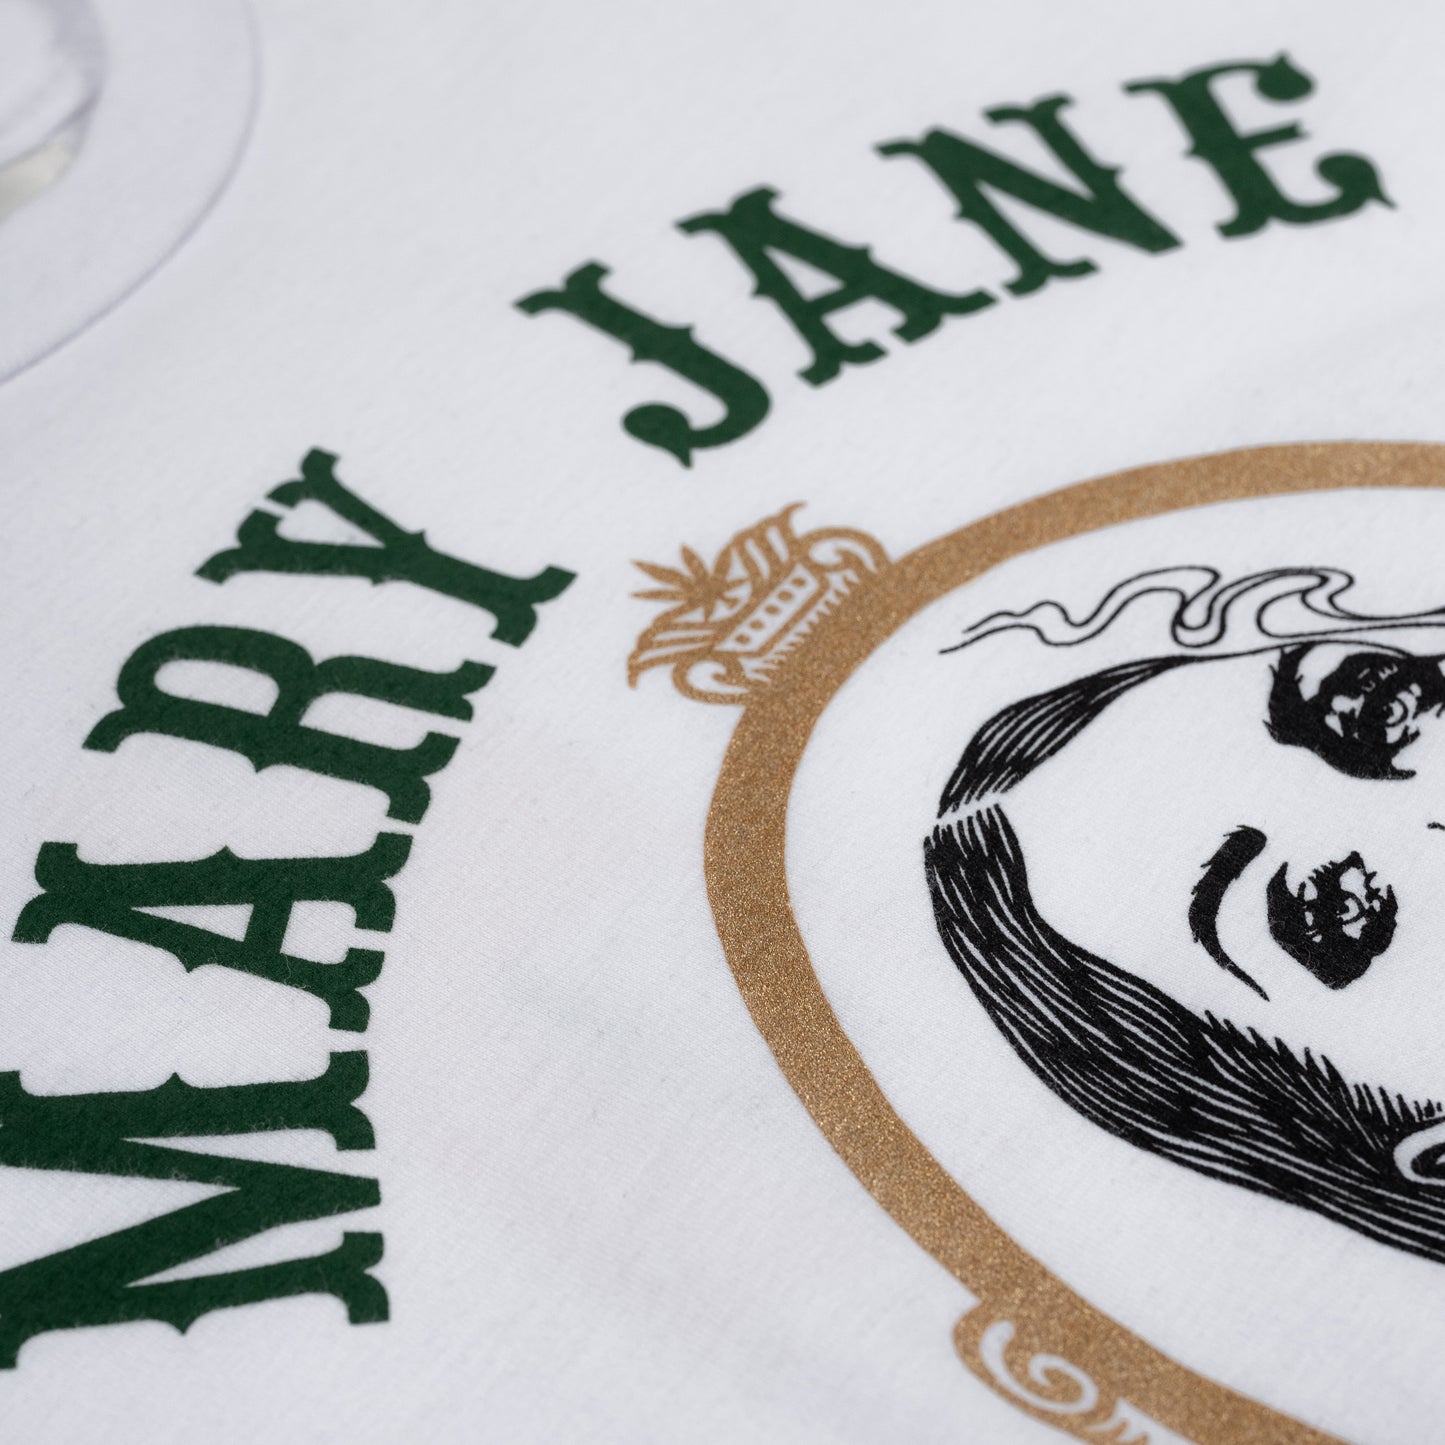 Mary Jane, White